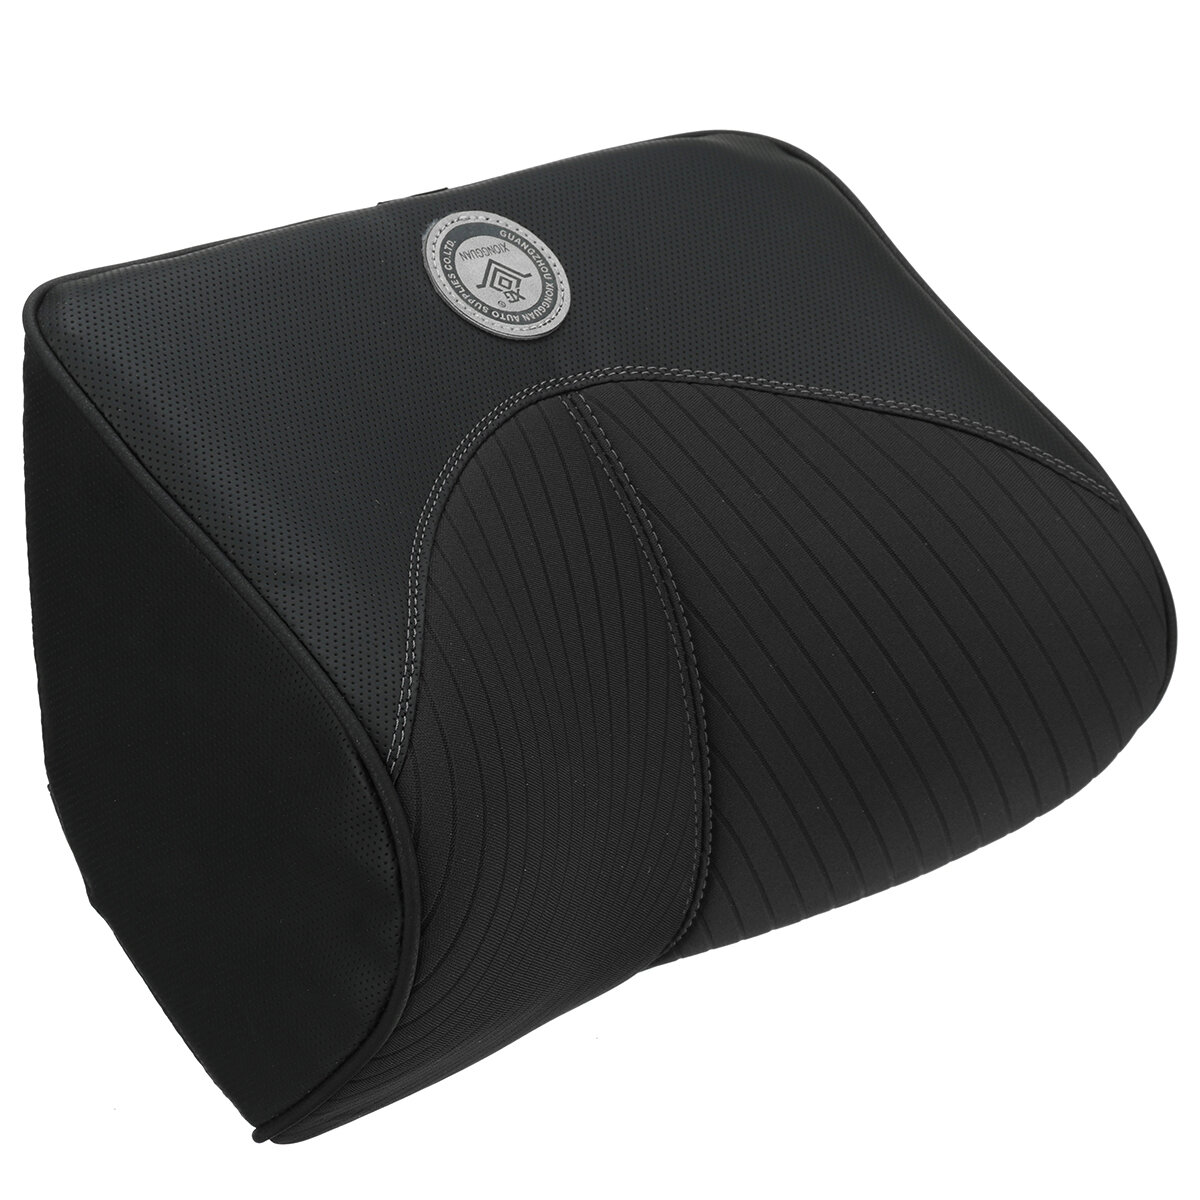 Universal Car Memory Foam Massage Pillow Headrest Neck Support Rest Travel Lumbar Back Pillow Cushion for Office Desk Ch